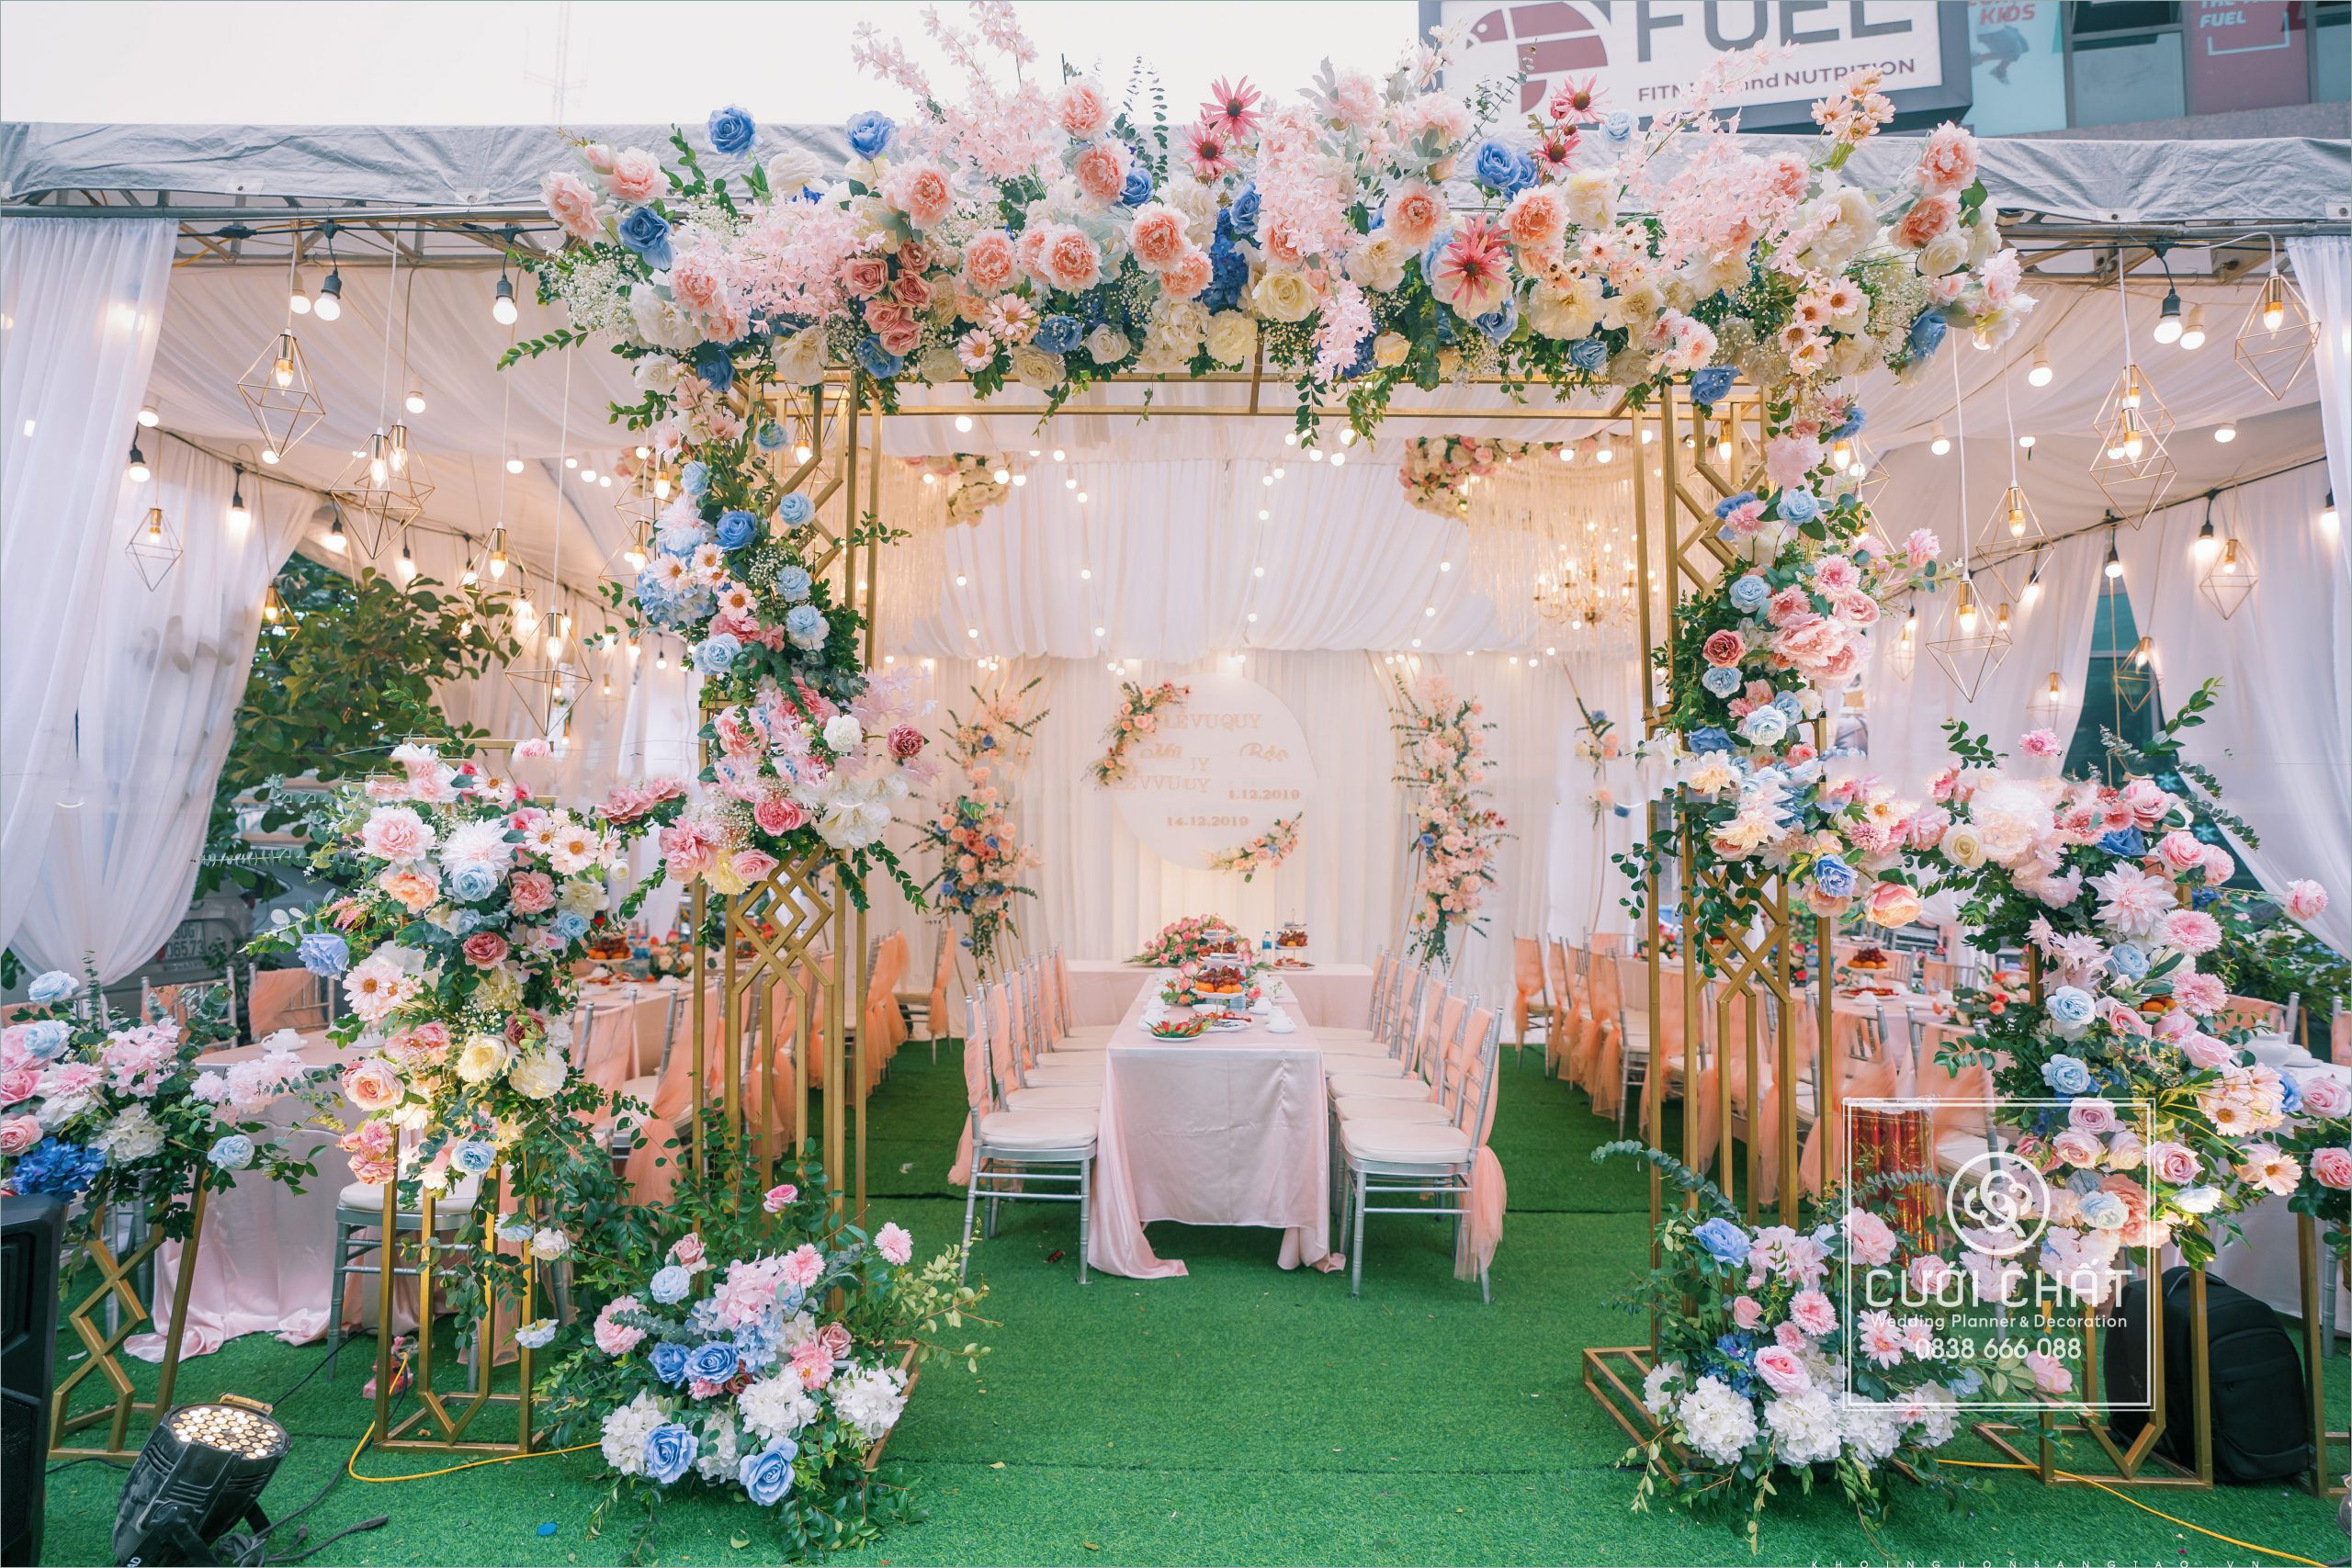 Mở ra một thế giới cổng hoa cưới đẹp tổng hợp từ những phong cách độc đáo nhất. Từ những cánh hoa khổng lồ đến những bản thiết kế nhỏ xinh, chúng tôi đều có. Chỉ cần một cái nhìn, bạn sẽ bị thu hút bởi sự độc đáo và quyến rũ của những bức ảnh cổng hoa cưới được chụp bởi các nhiếp ảnh gia chuyên nghiệp.